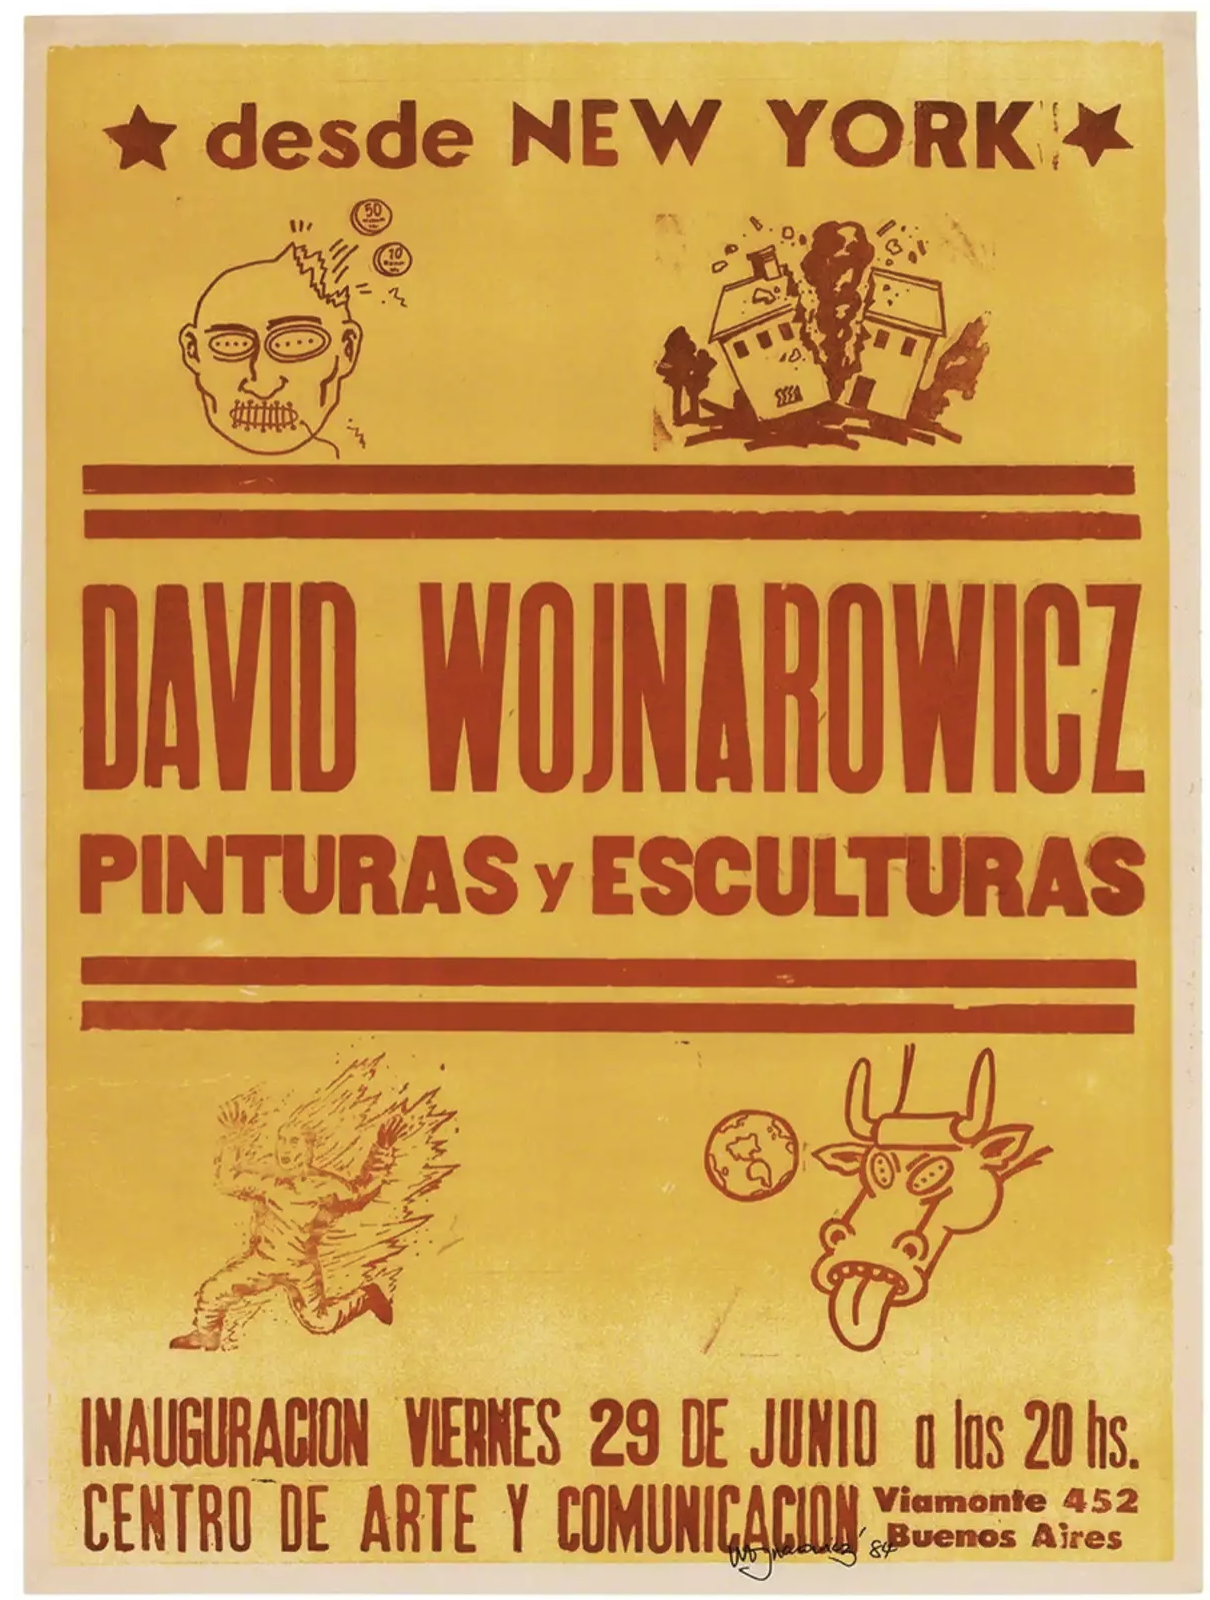 desde NEW YORK, David Wojnarowicz, Pinturas y Esculturas, CENTRO DE ARTE Y COMUNICACIÓN, 1984